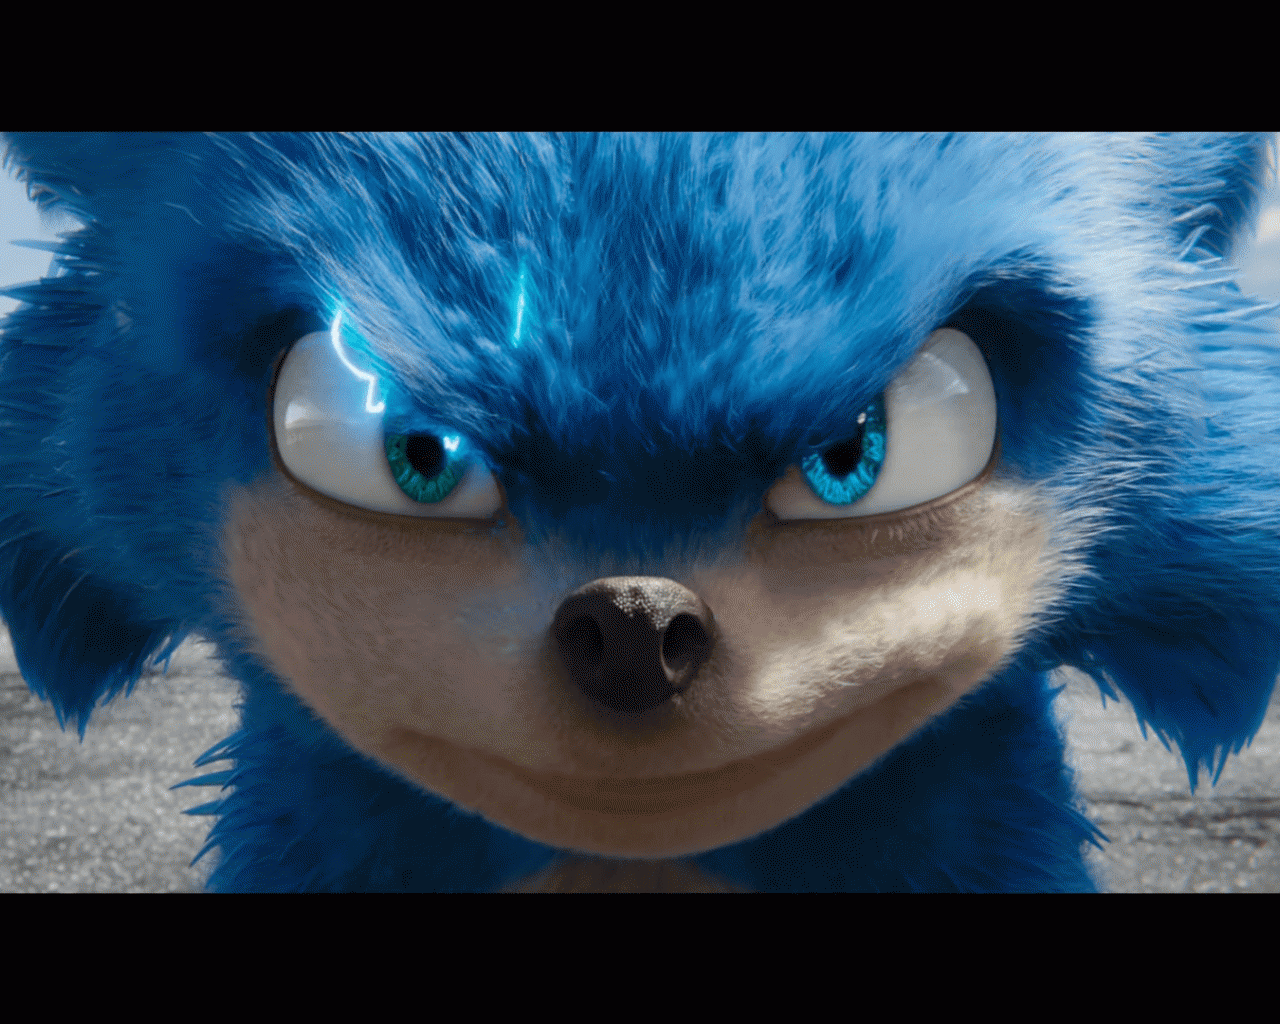 Free download Sonic the Hedgehog Movie Brings